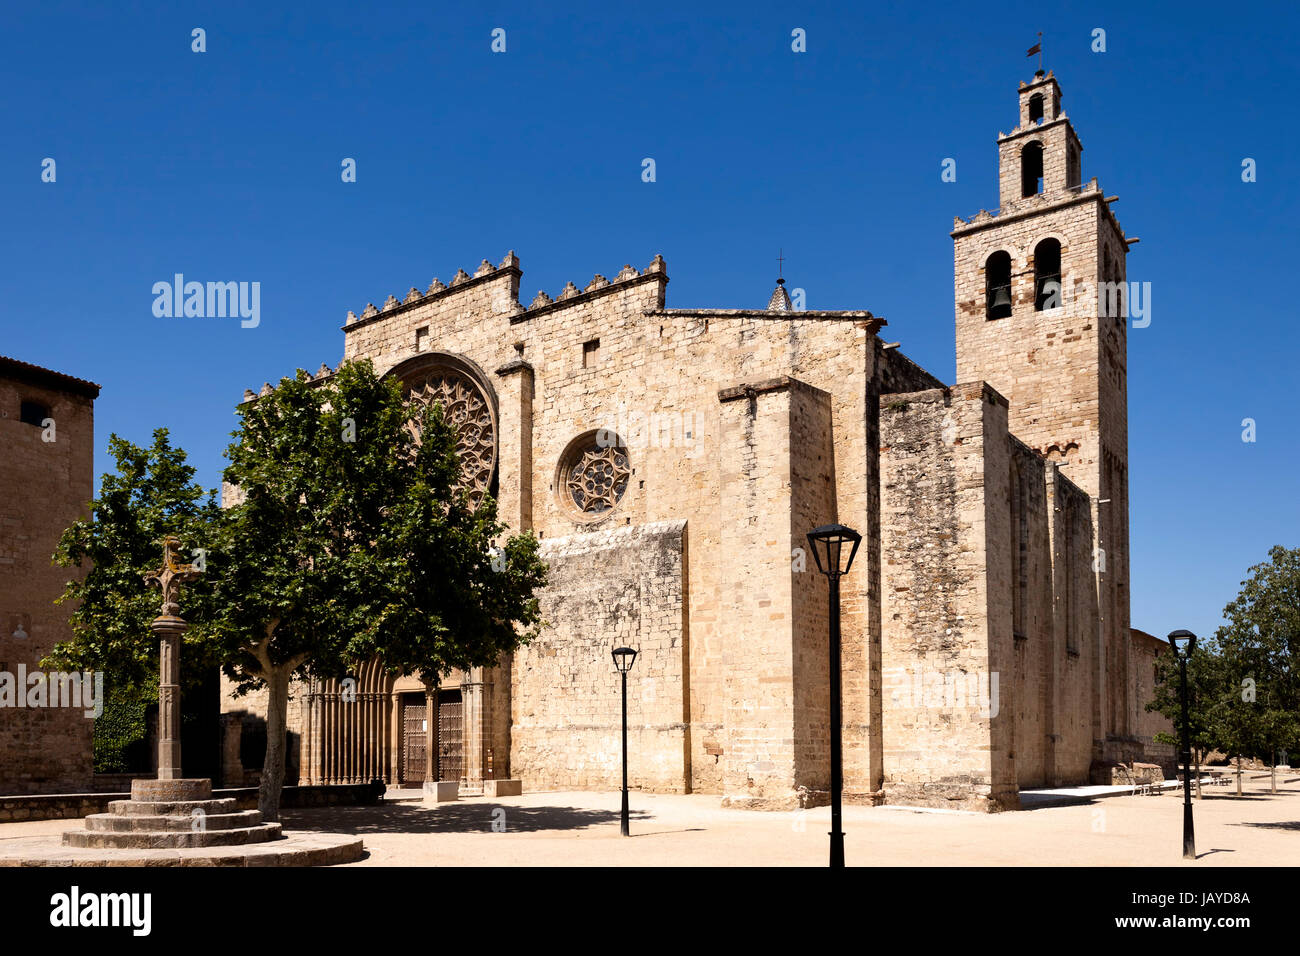 Le monastère de Sant Cugat ou Cucupha, est une abbaye bénédictine de Sant Cugat del Vallès, Catalogne, Espagne. Banque D'Images